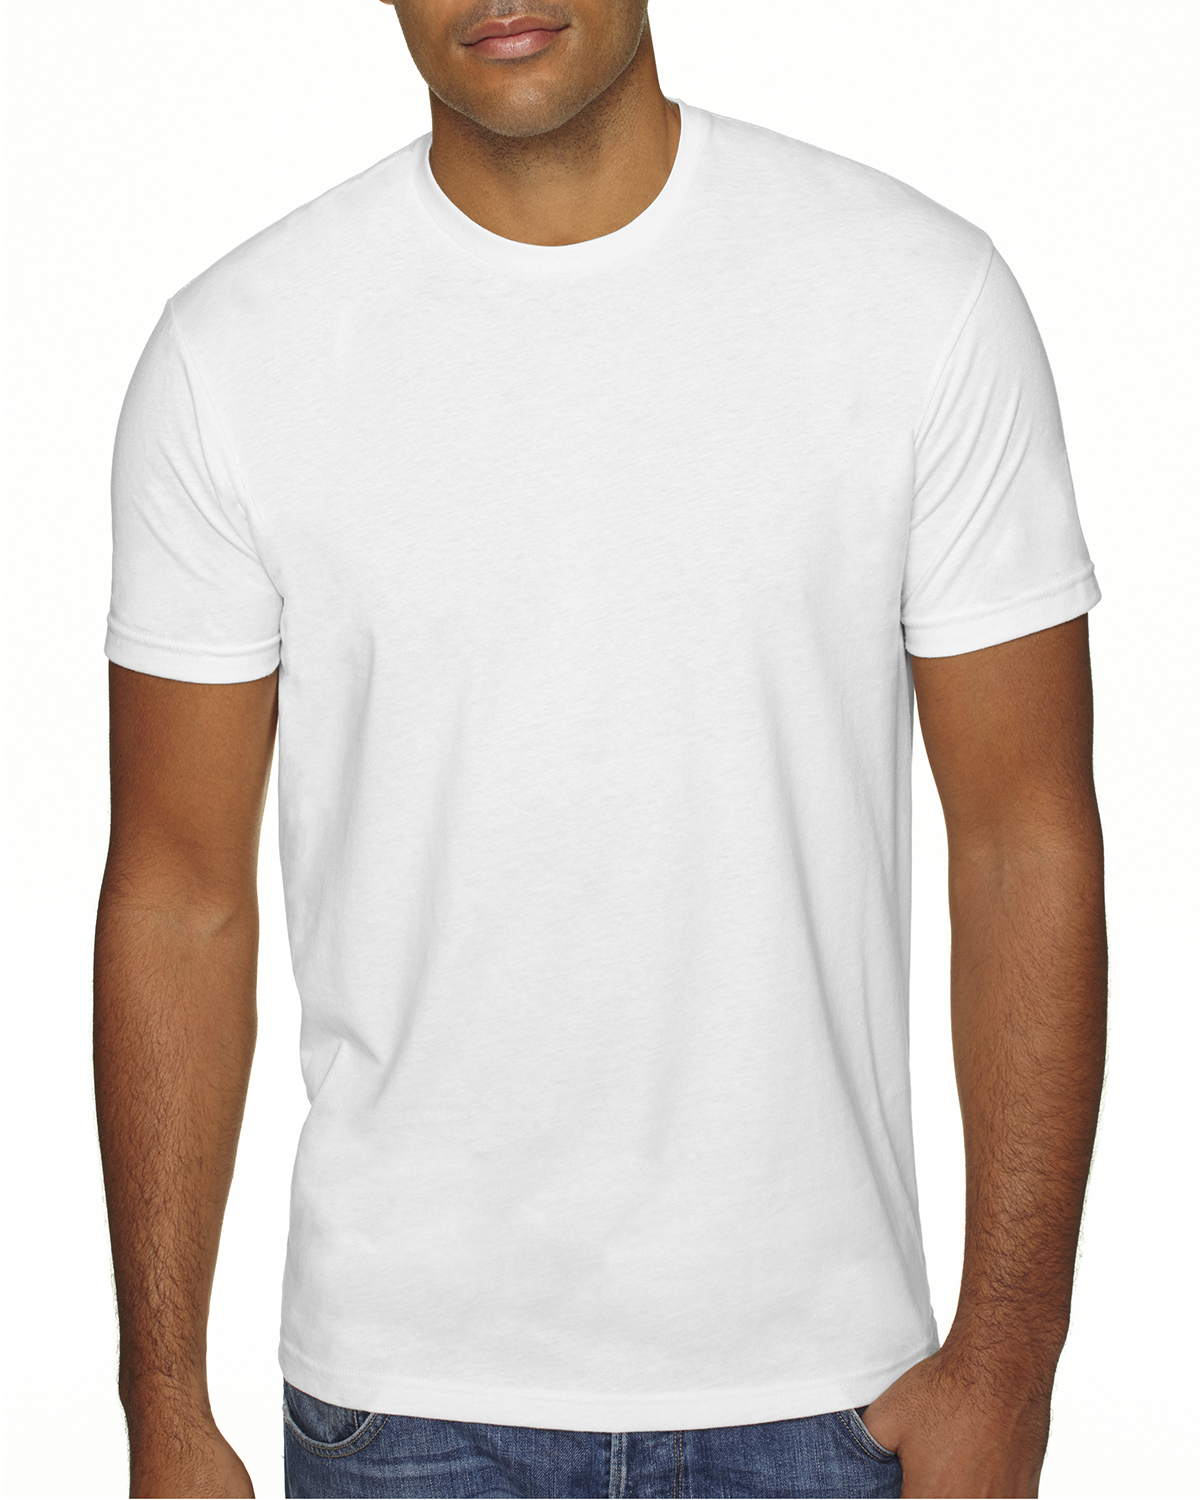 Next Level 6410 Men's Sueded T-Shirt - Wholesale